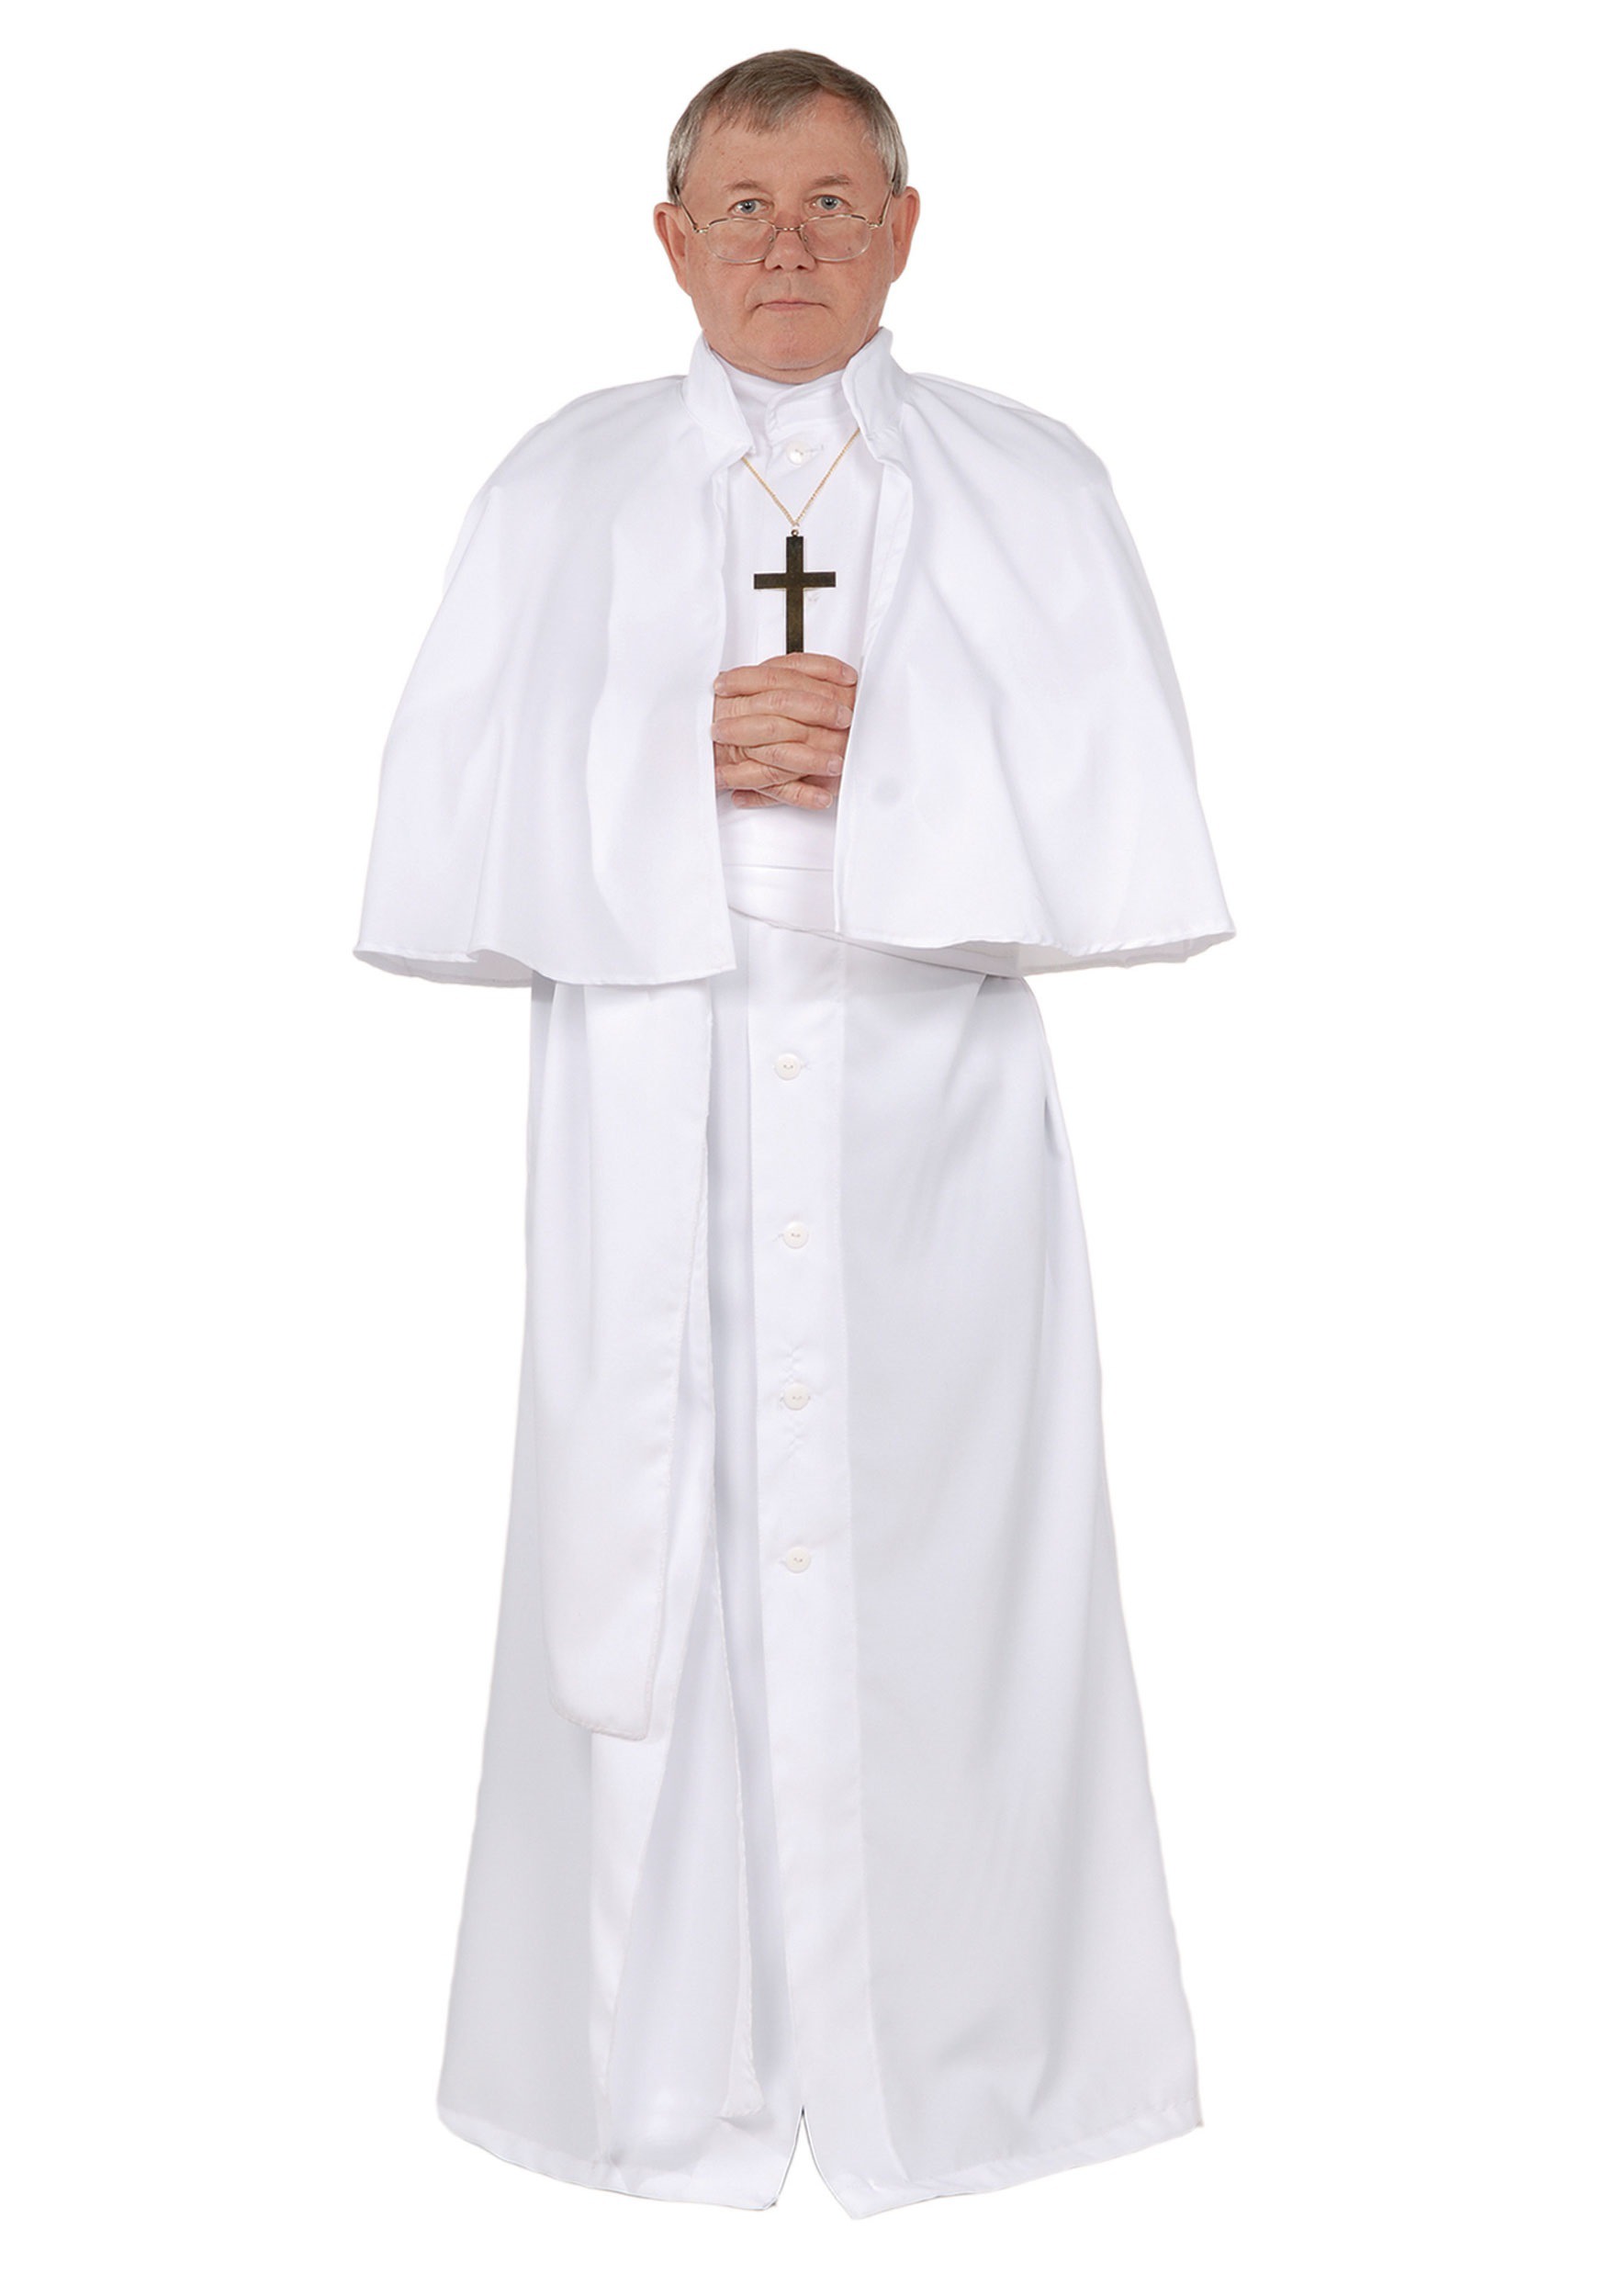 Men’s Plus Size Pope Costume